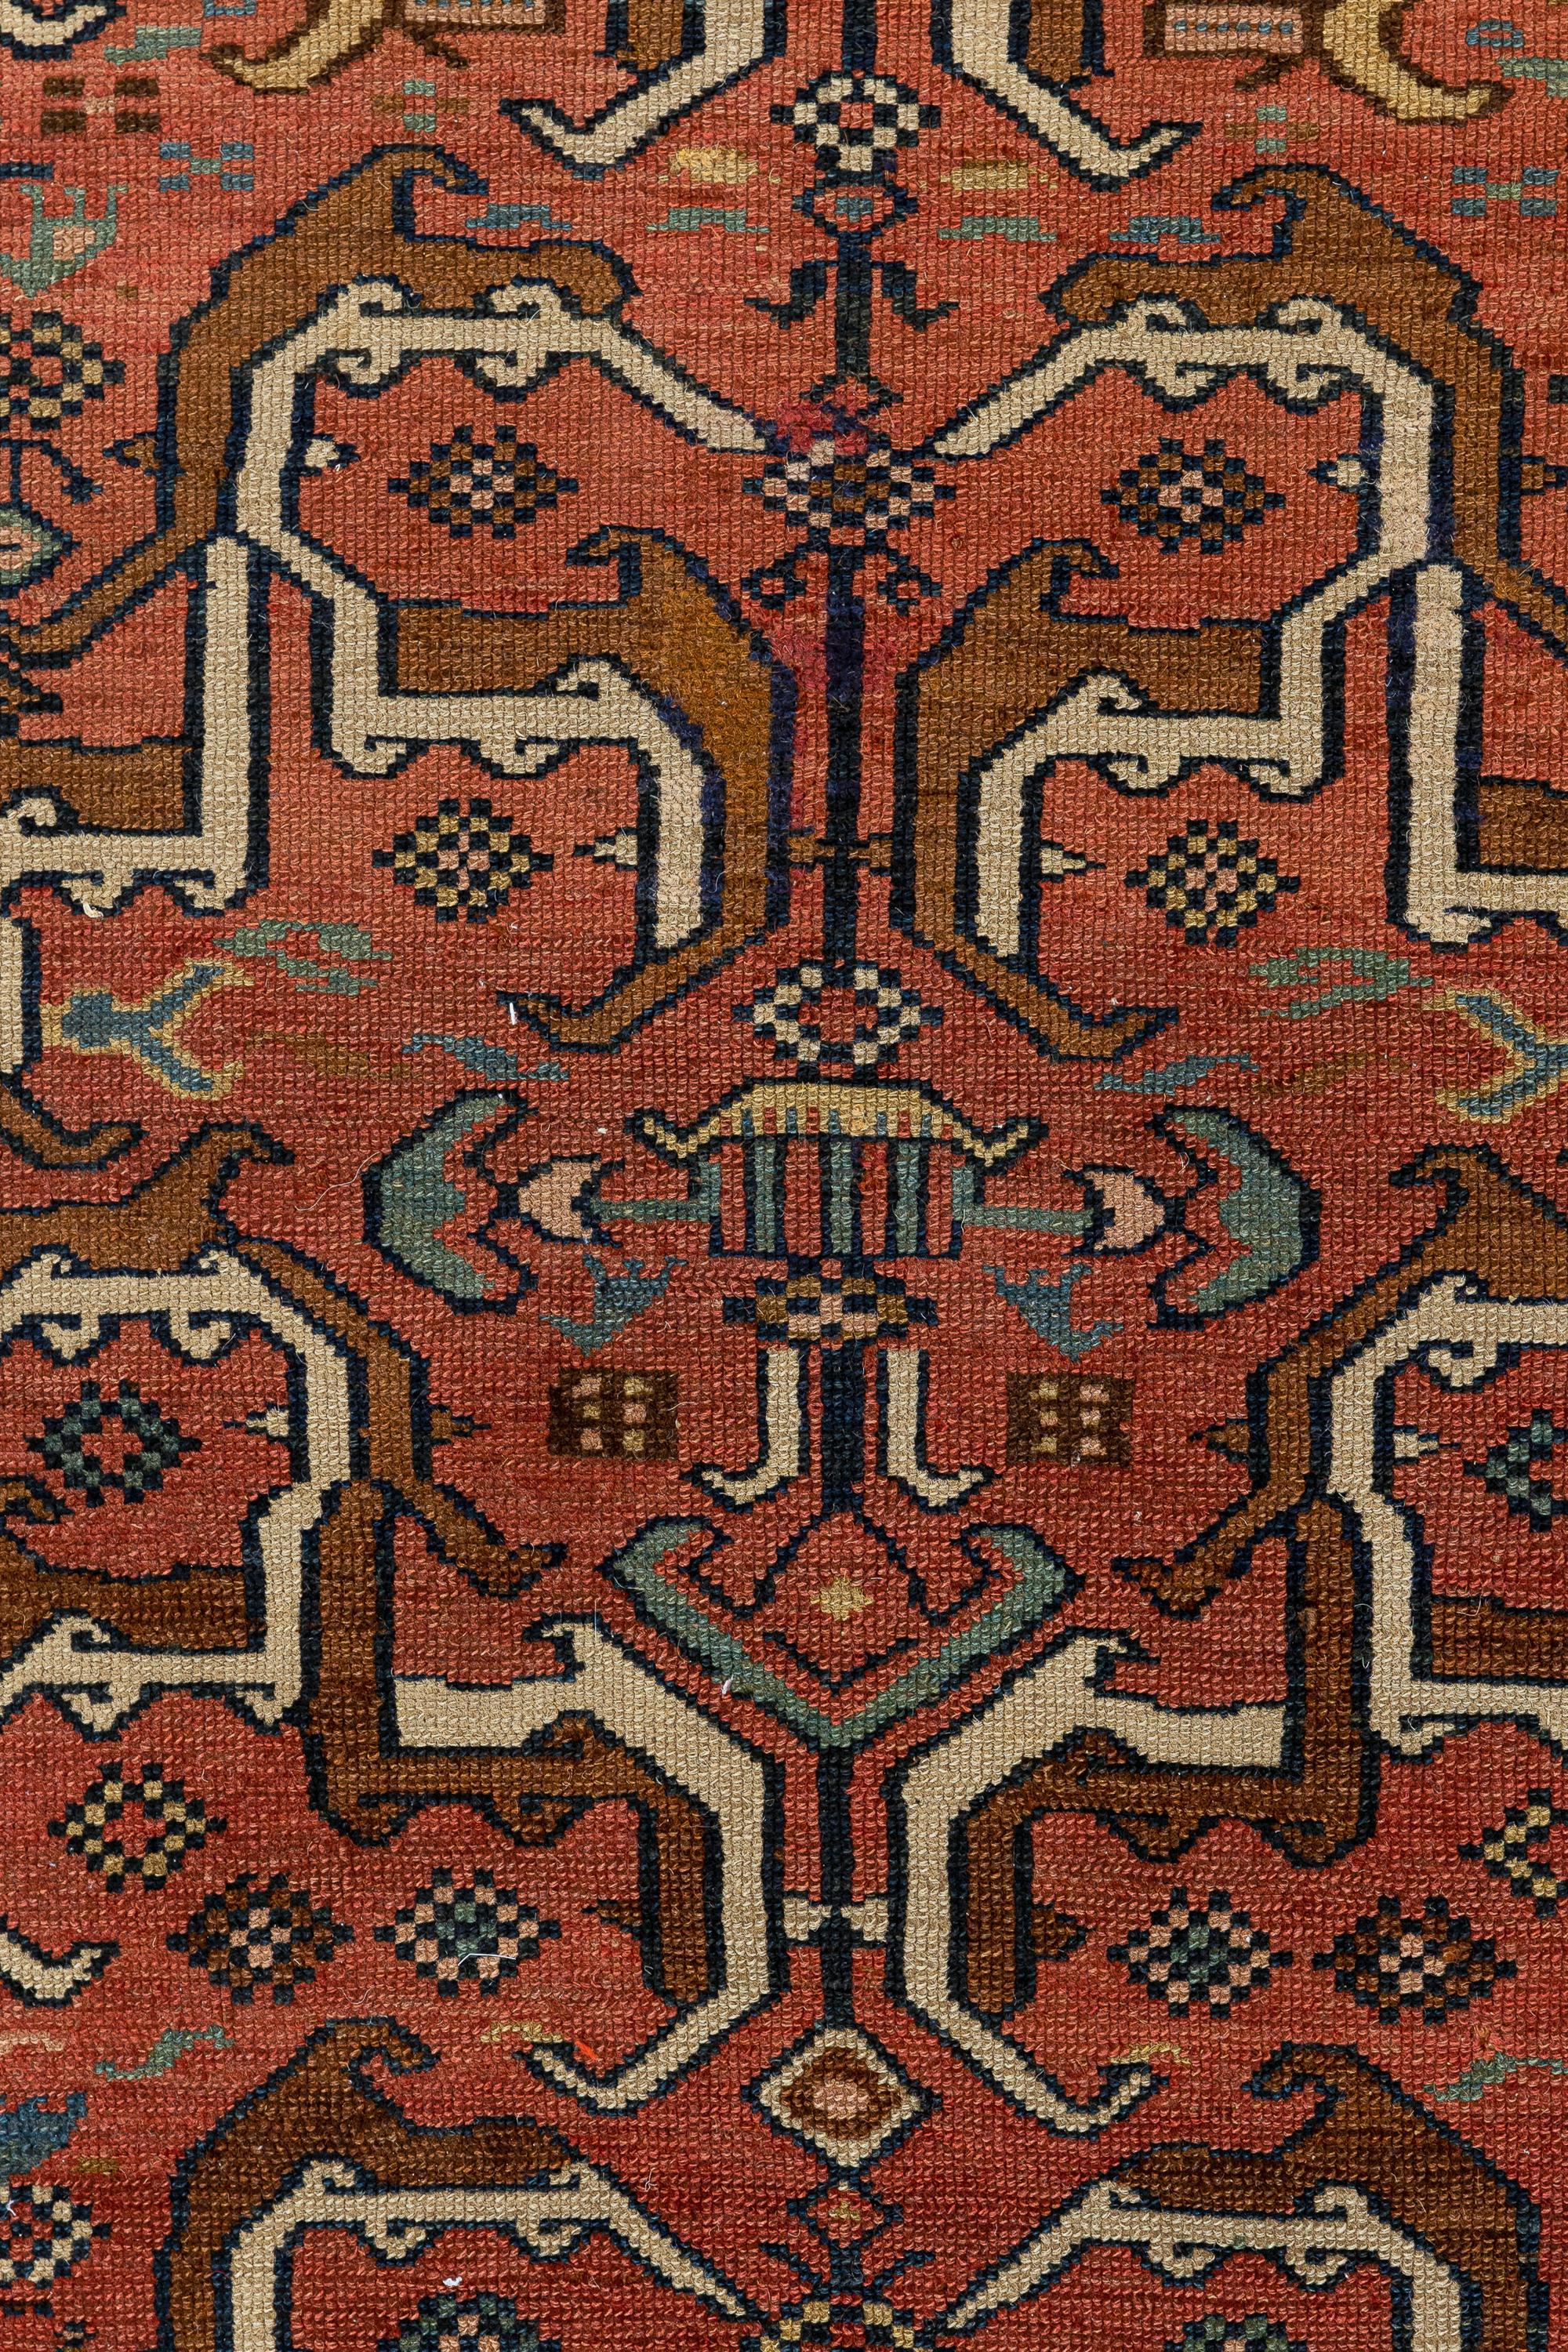 Nordwest-Persien

Atemberaubender Teppich, gewebt von einem hochqualifizierten Künstler im späten 19. Jahrhundert. Der Teppich zeigt ein geometrisches Muster, das von traditionellen Mustern aus Nordwestpersien inspiriert ist. Das zimtfarbene